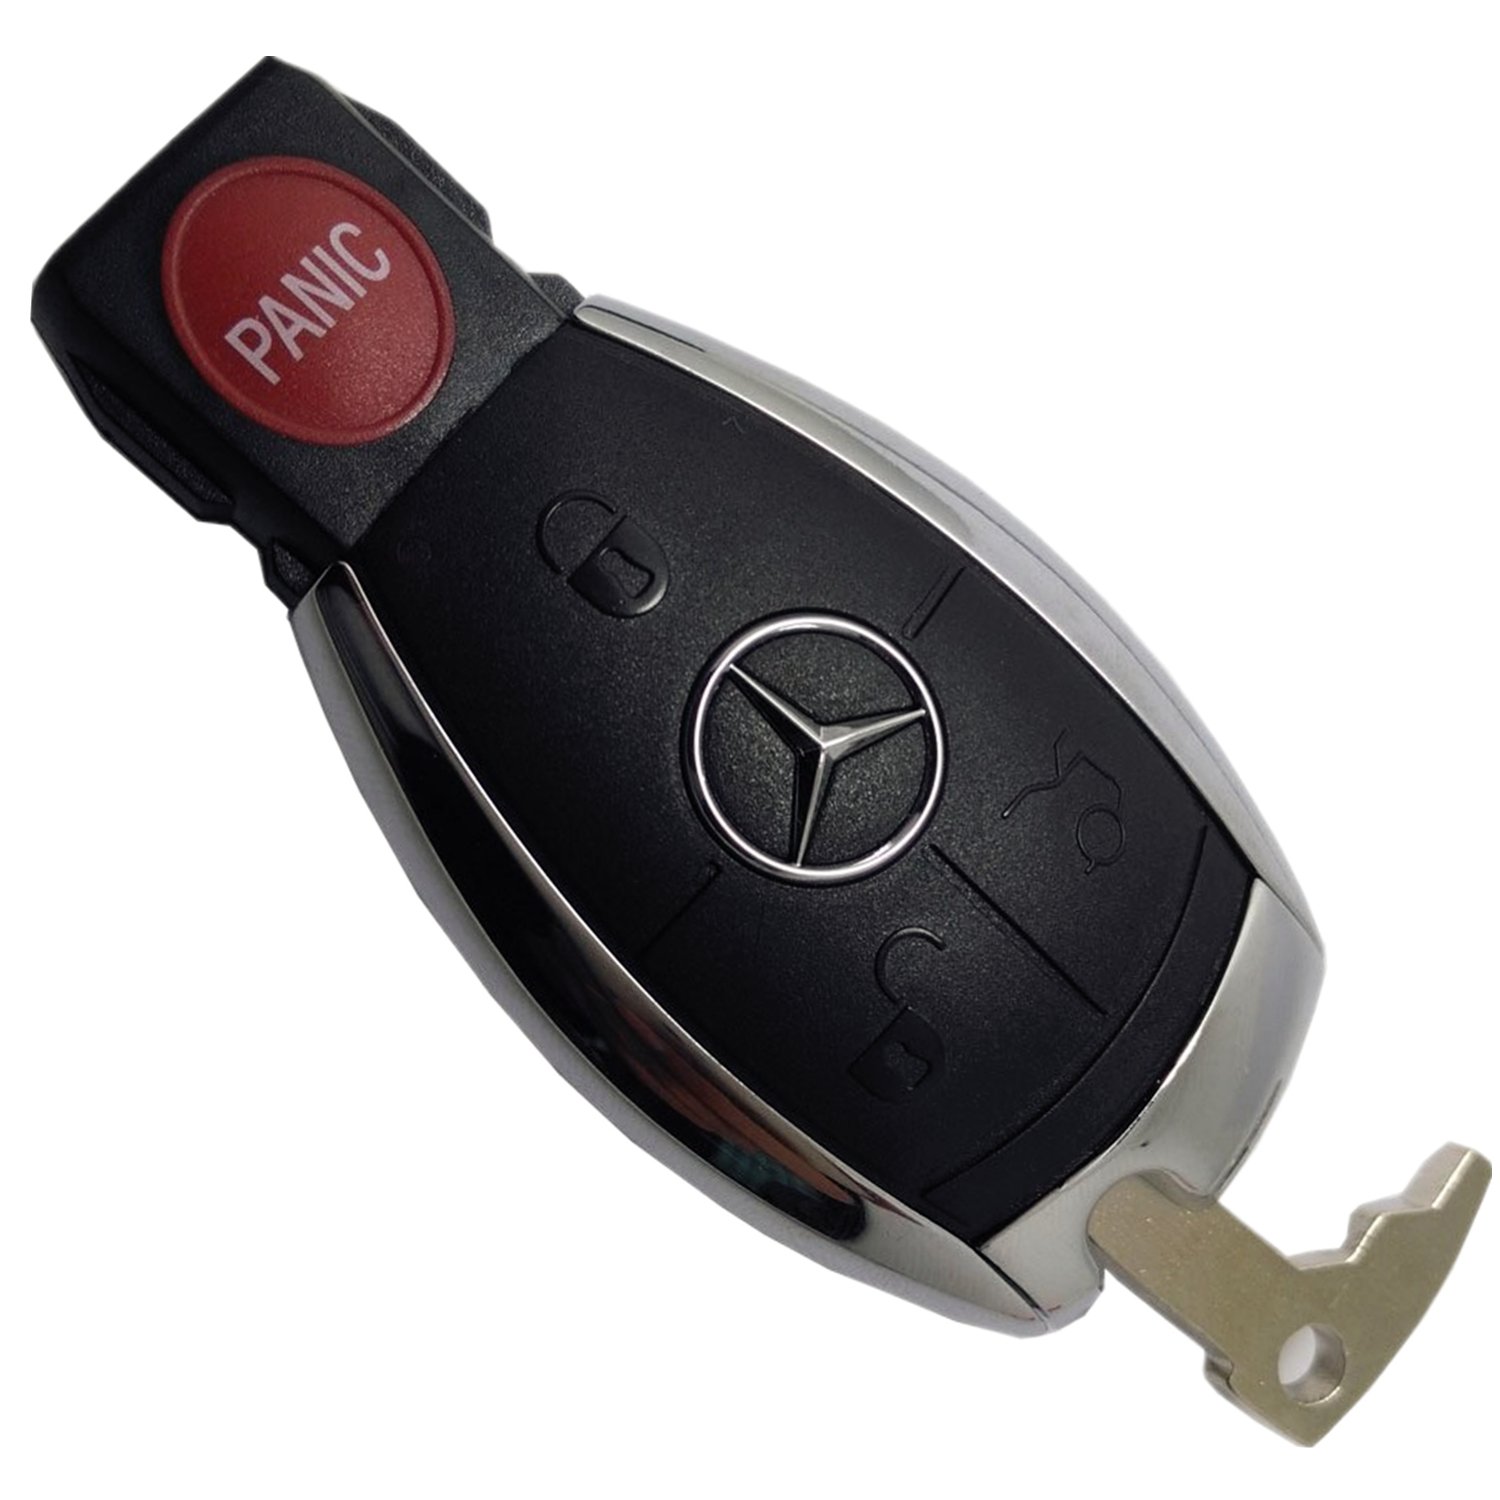 Chìa Khóa Thông Minh Mercedes 4 nút